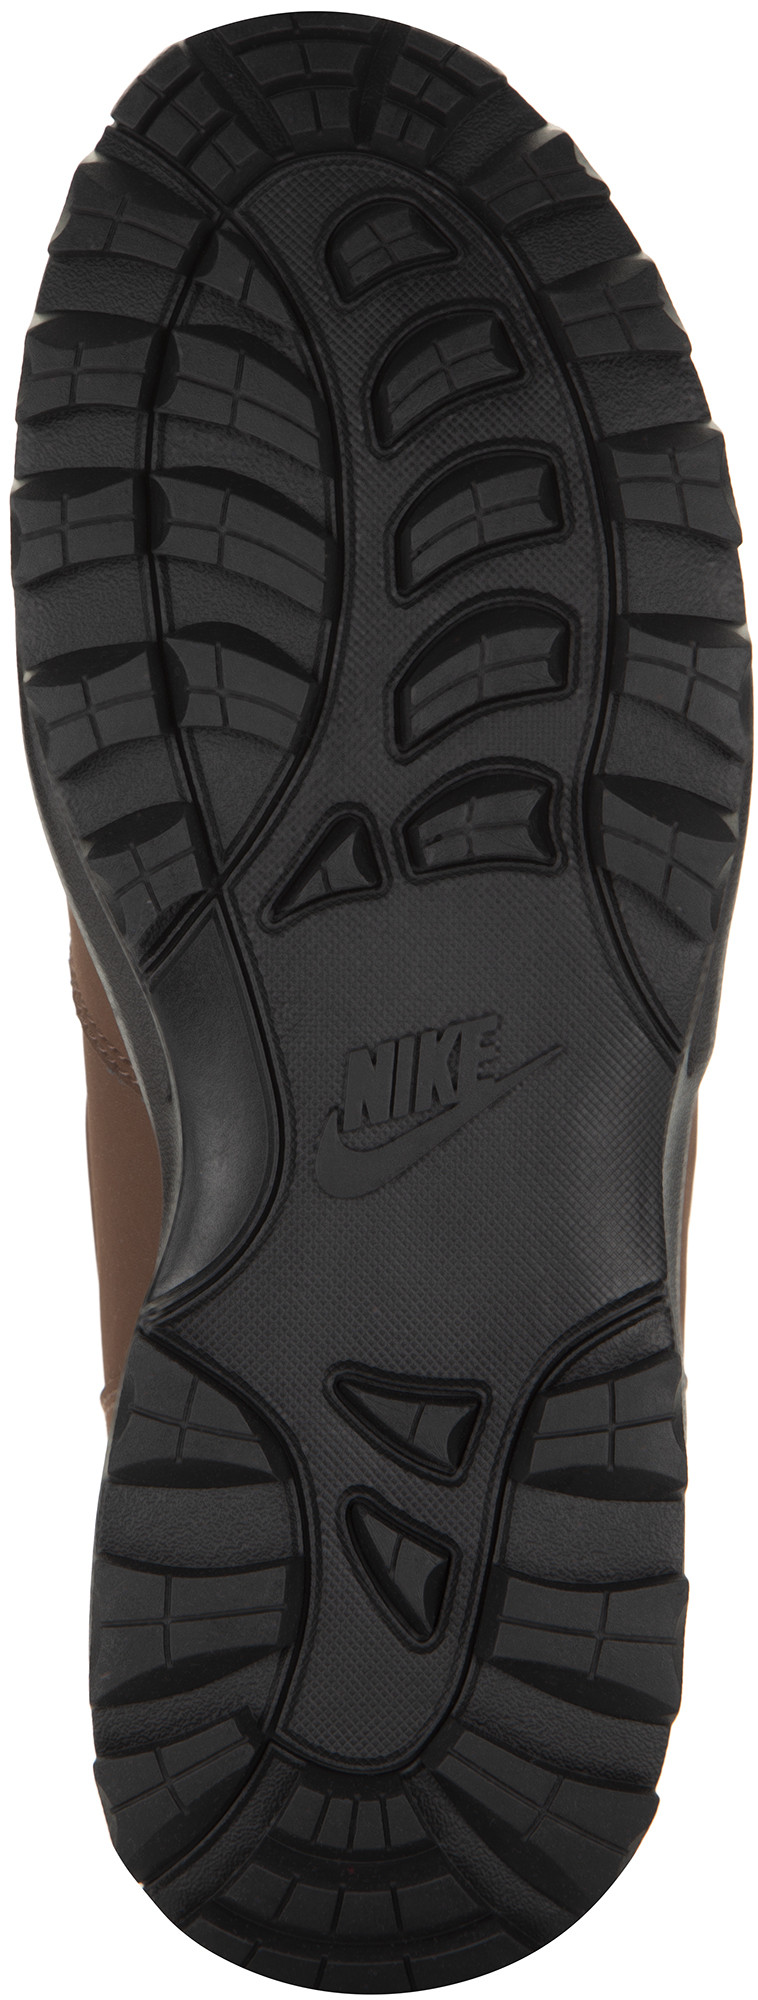 Ботинки утепленные мужские Nike Manoa Leather